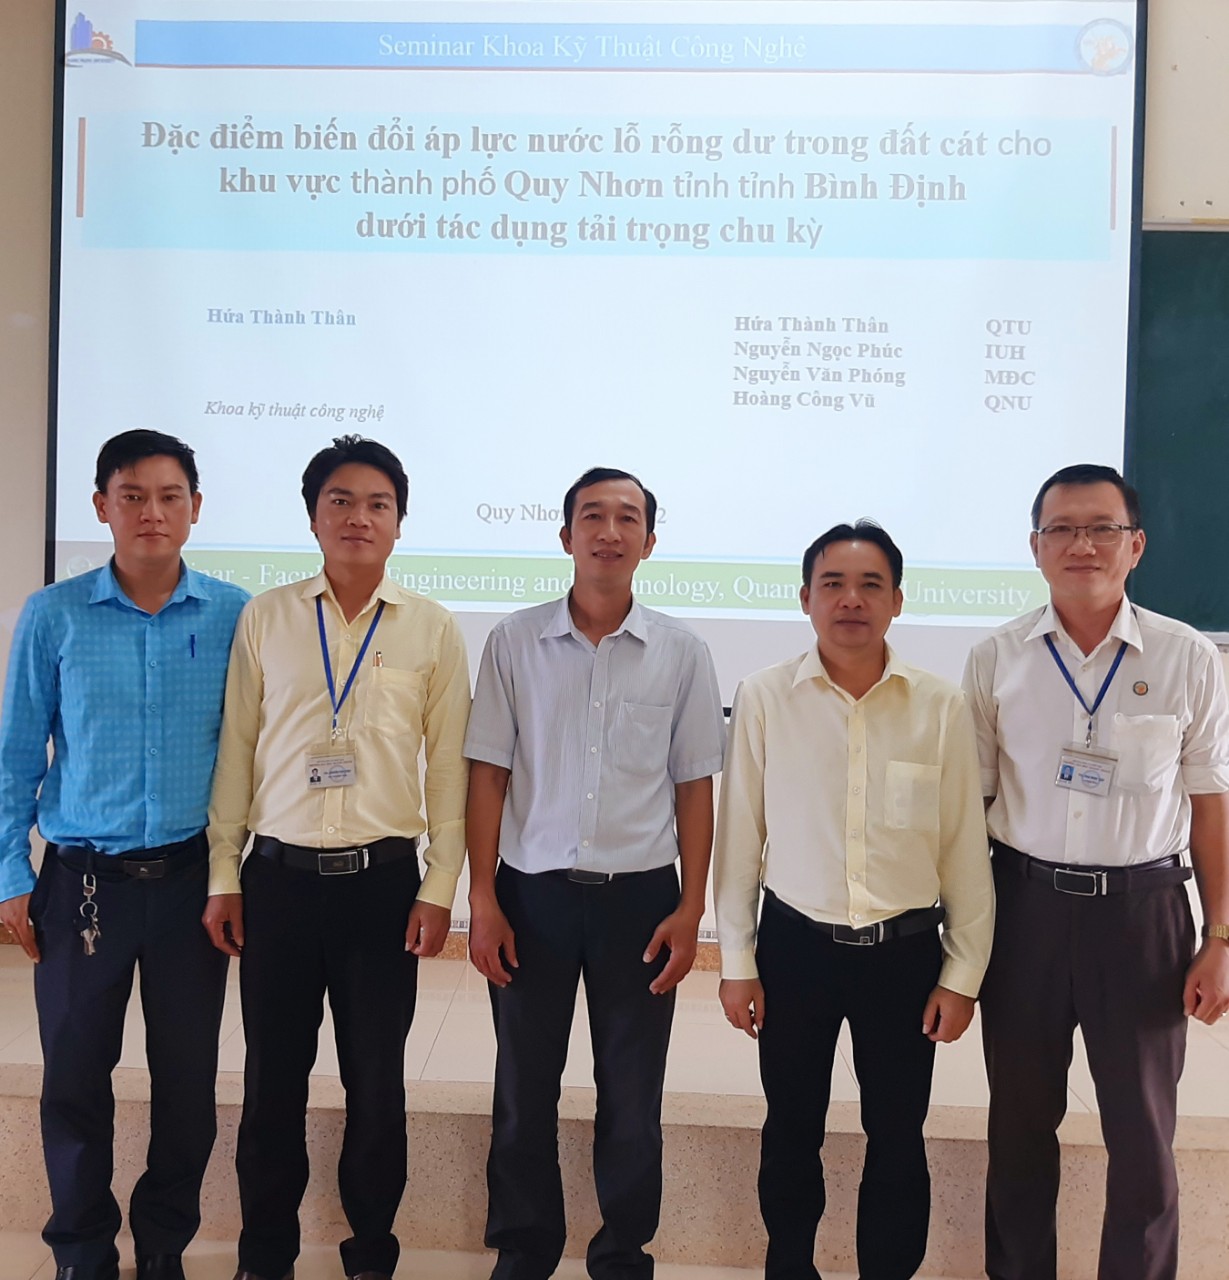 Báo cáo Seminar “Đặc điểm biến đổi áp lực nước lỗ rỗng dư trong đất cát cho khu vực Thành phố Quy Nhơn tỉnh Bình Định dưới tác dụng tải trọng chu kỳ”